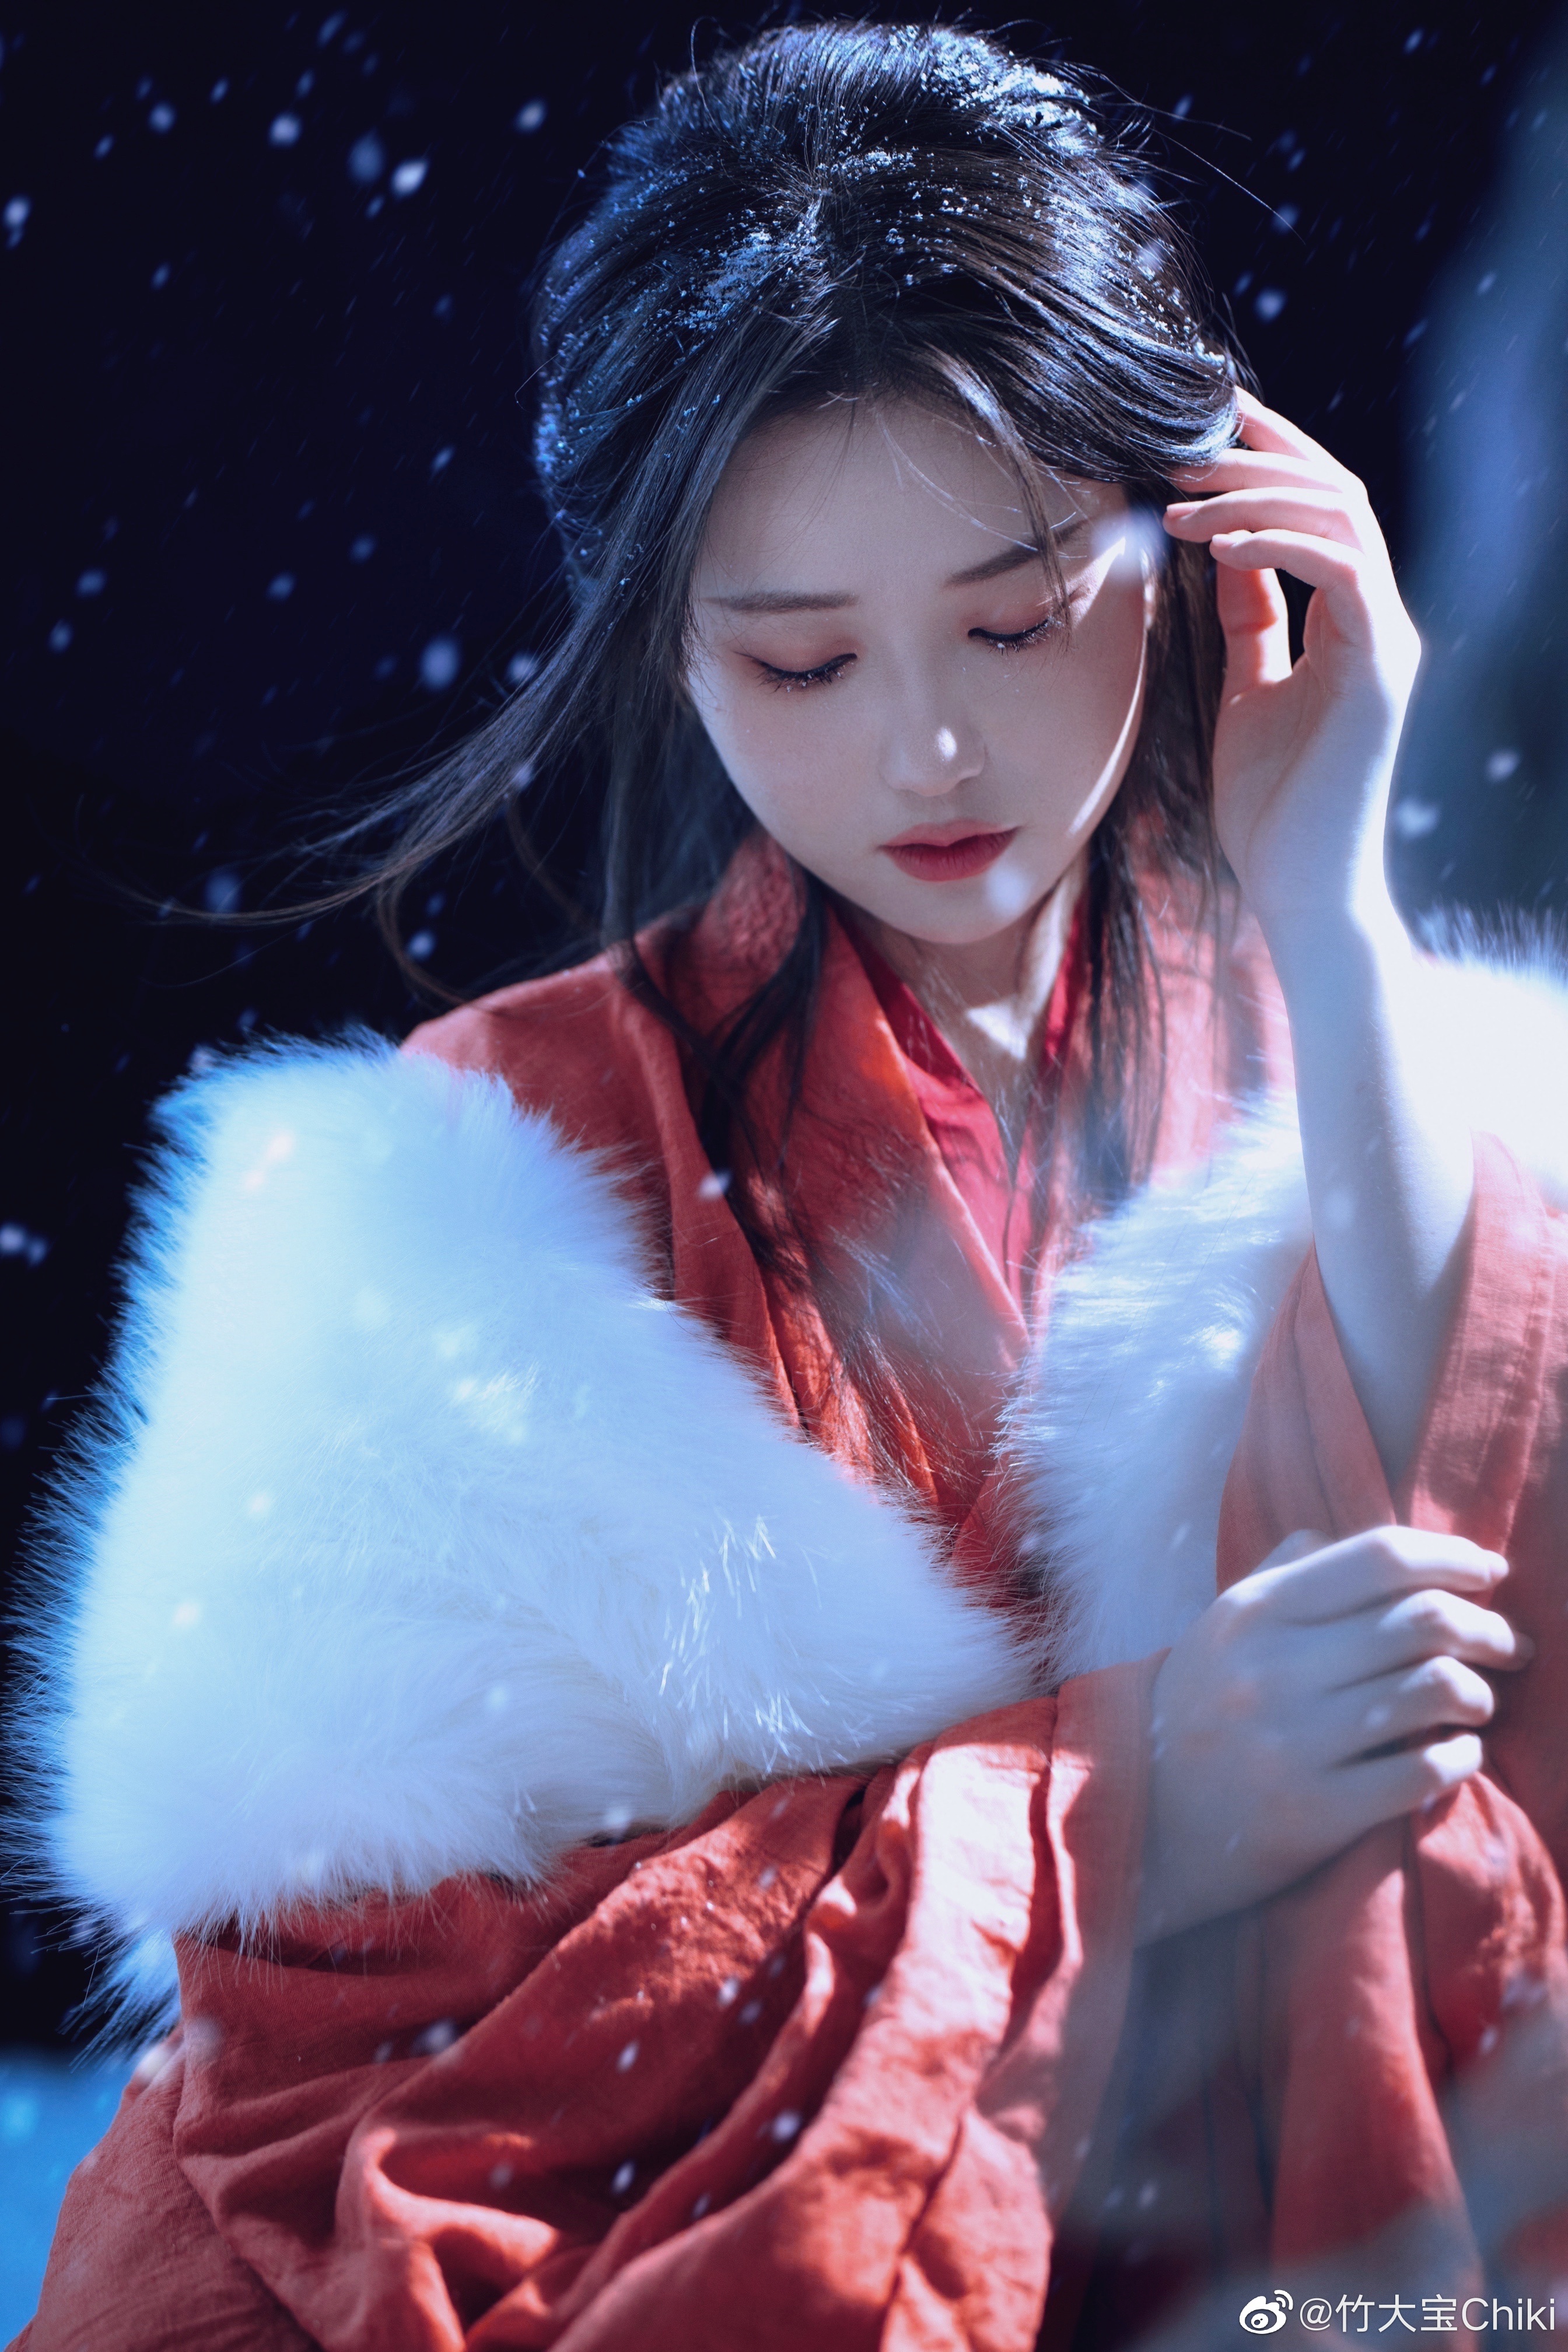 Được biết đến như một trong những ngôi sao nổi tiếng hàng đầu của Trung Quốc, Yifei Liu đã chinh phục hàng triệu trái tim bởi vẻ đẹp tinh tế và tài năng diễn xuất xuất sắc. Hãy cùng chiêm ngưỡng bức ảnh của cô nàng trong trang phục cổ trang đẹp mê hồn này và cảm nhận sự tinh tế của nghệ thuật chụp hình.